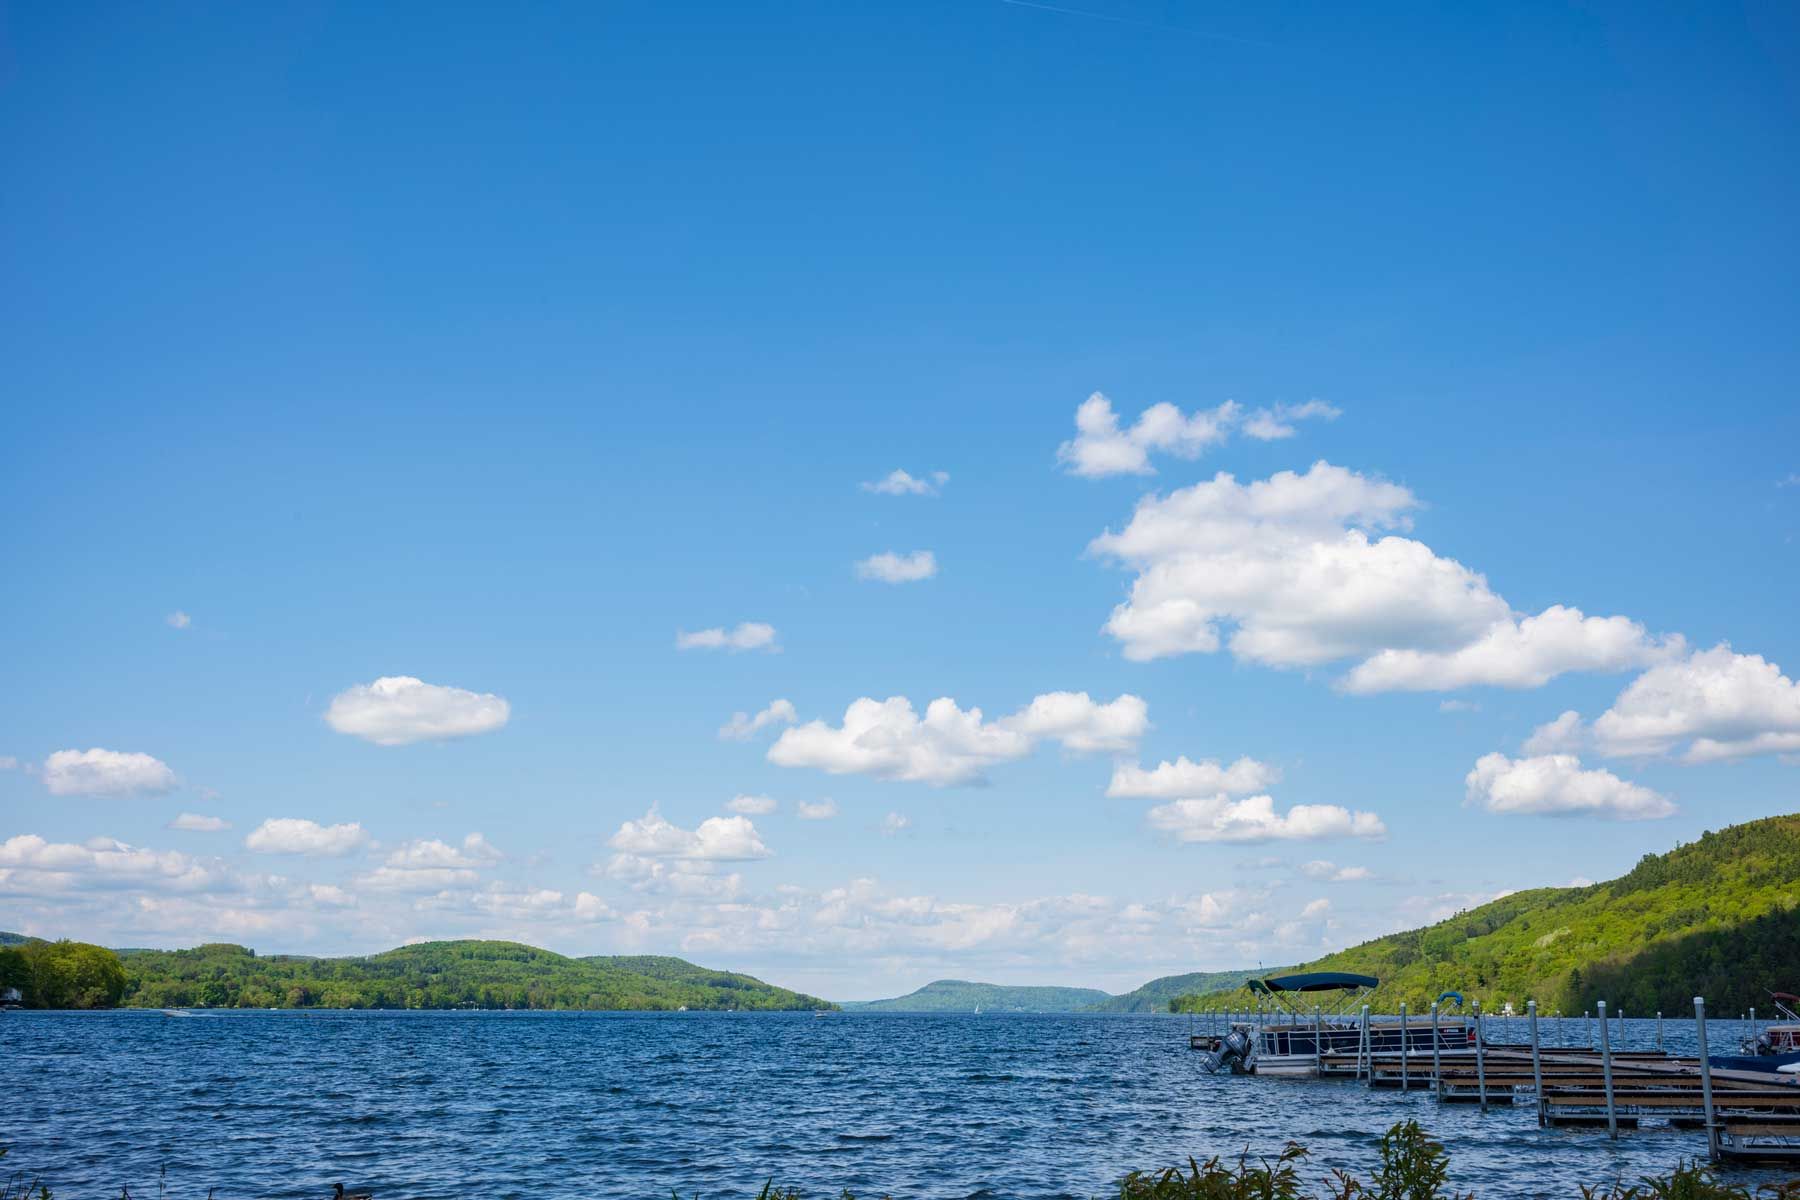 Plave vode jezera Otsego u Cooperstownu u New Yorku, sunčanog ljetnog dana s kumulusnim oblacima na nebu, fotografirane u blizini pristaništa.